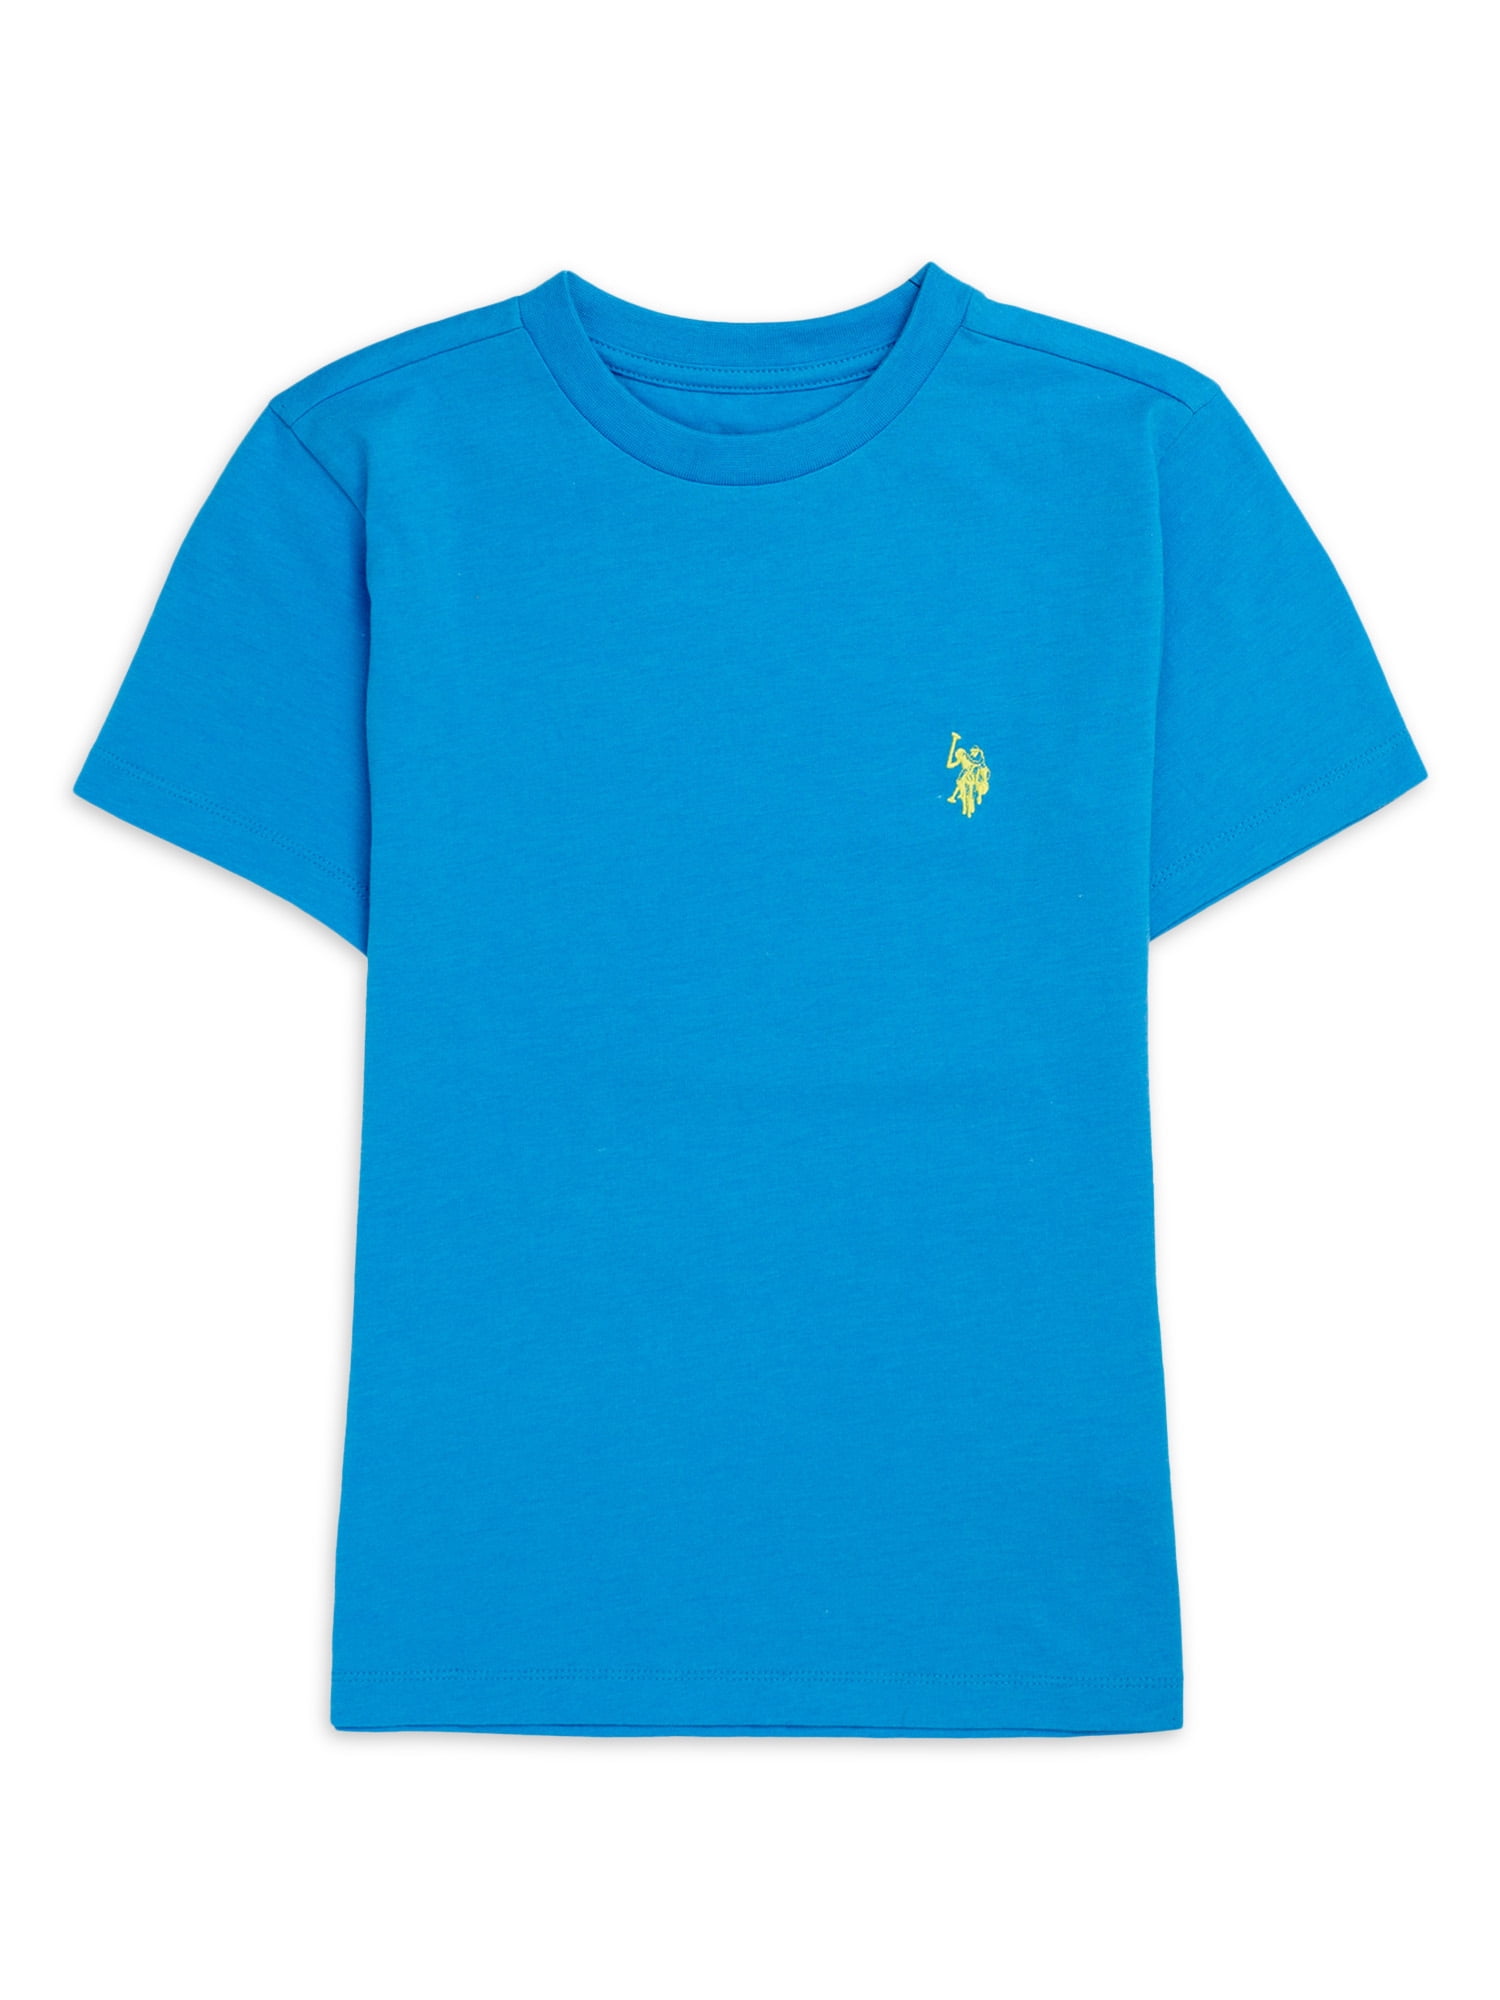 Brand new Polo Ralph Lauren kids blue t shirt medium M 10-12 for